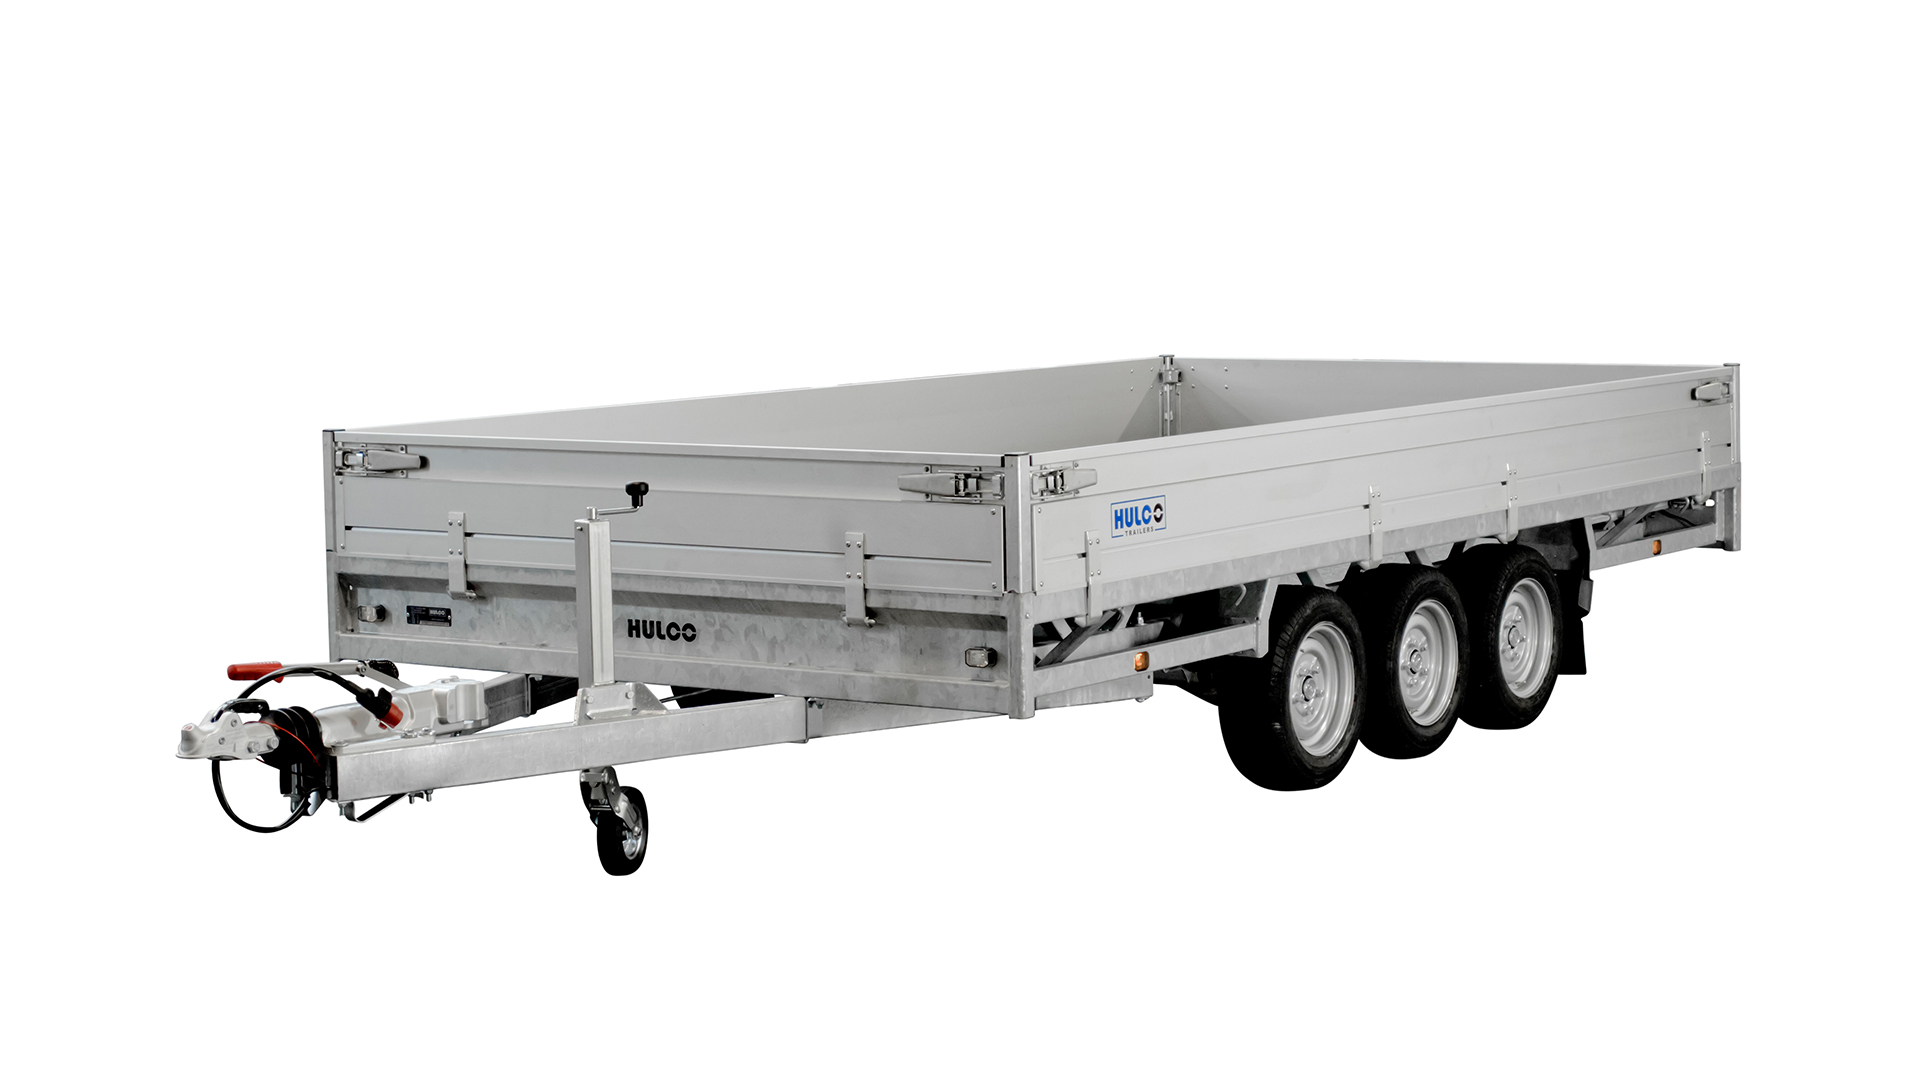 Hulco PKW Anhänger Hochlader Alu 3500 kg, Ladefläche 6,11 x2,23 m - Tridem